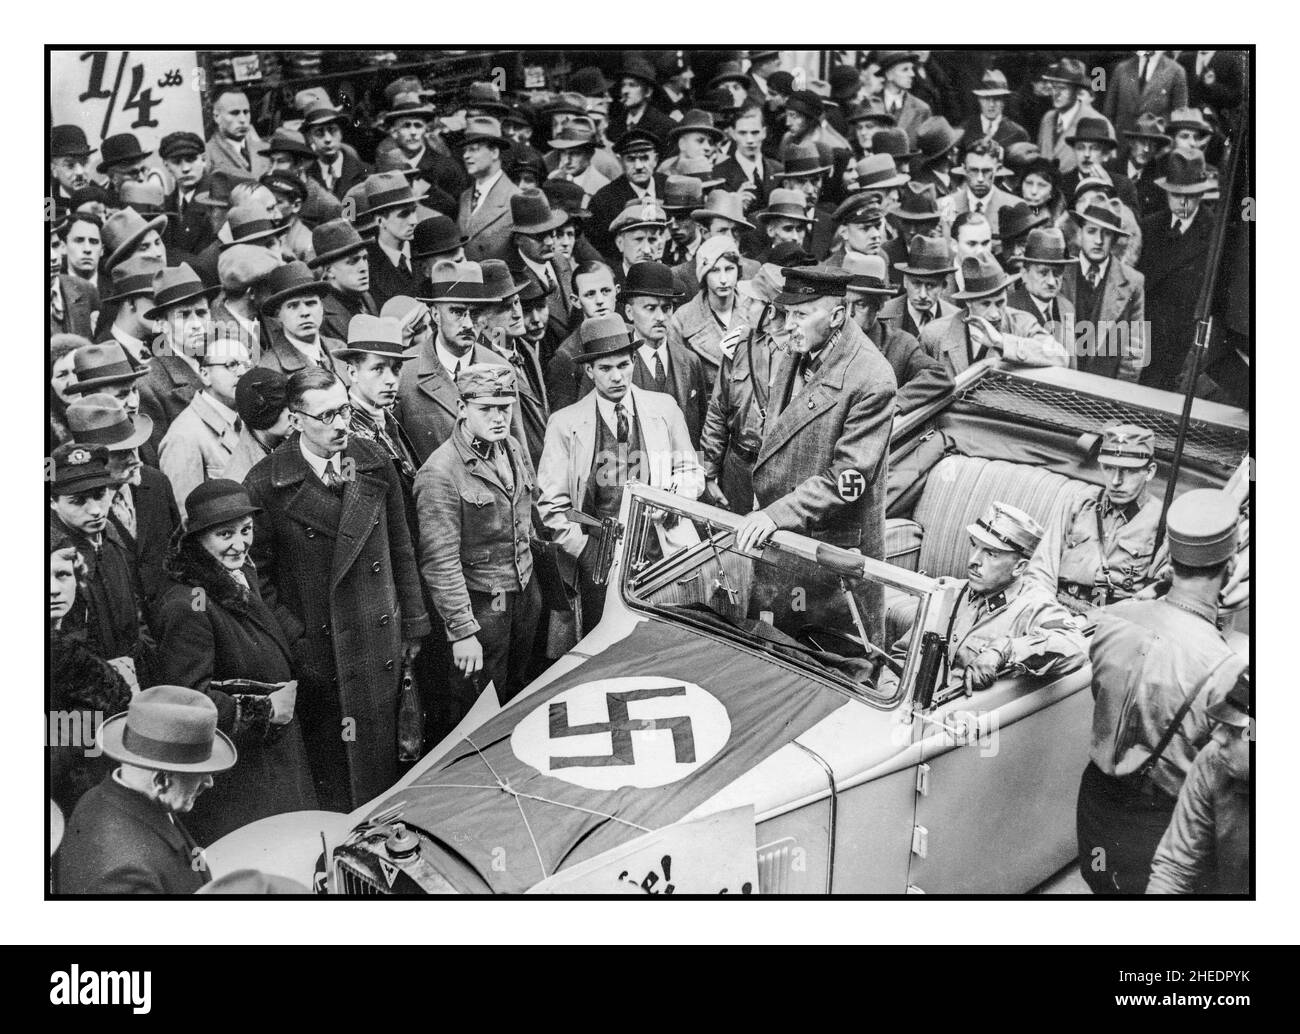 1930s Germania nazista Berlino. I nazisti invitano i cittadini tedeschi a boicottare i negozi ebrei. Lo Sturmabteilung SA, letteralmente "Stim distaccment") era l'ala paramilitare originaria del partito nazista. Ha giocato un ruolo significativo nell'ascesa al potere di Adolf Hitler nel 1920s e nel 1930s. I suoi scopi primari erano la protezione dei raduni e delle assemblee naziste, l'interruzione delle riunioni dei partiti opposti, la lotta contro le unità paramilitari dei partiti opposti, in particolare il Roter Frontkämpferbund del Partito Comunista di Germania (KPD) e il Reichsbanner Schwarz-Rot-Gold dei socialdemocratici Foto Stock